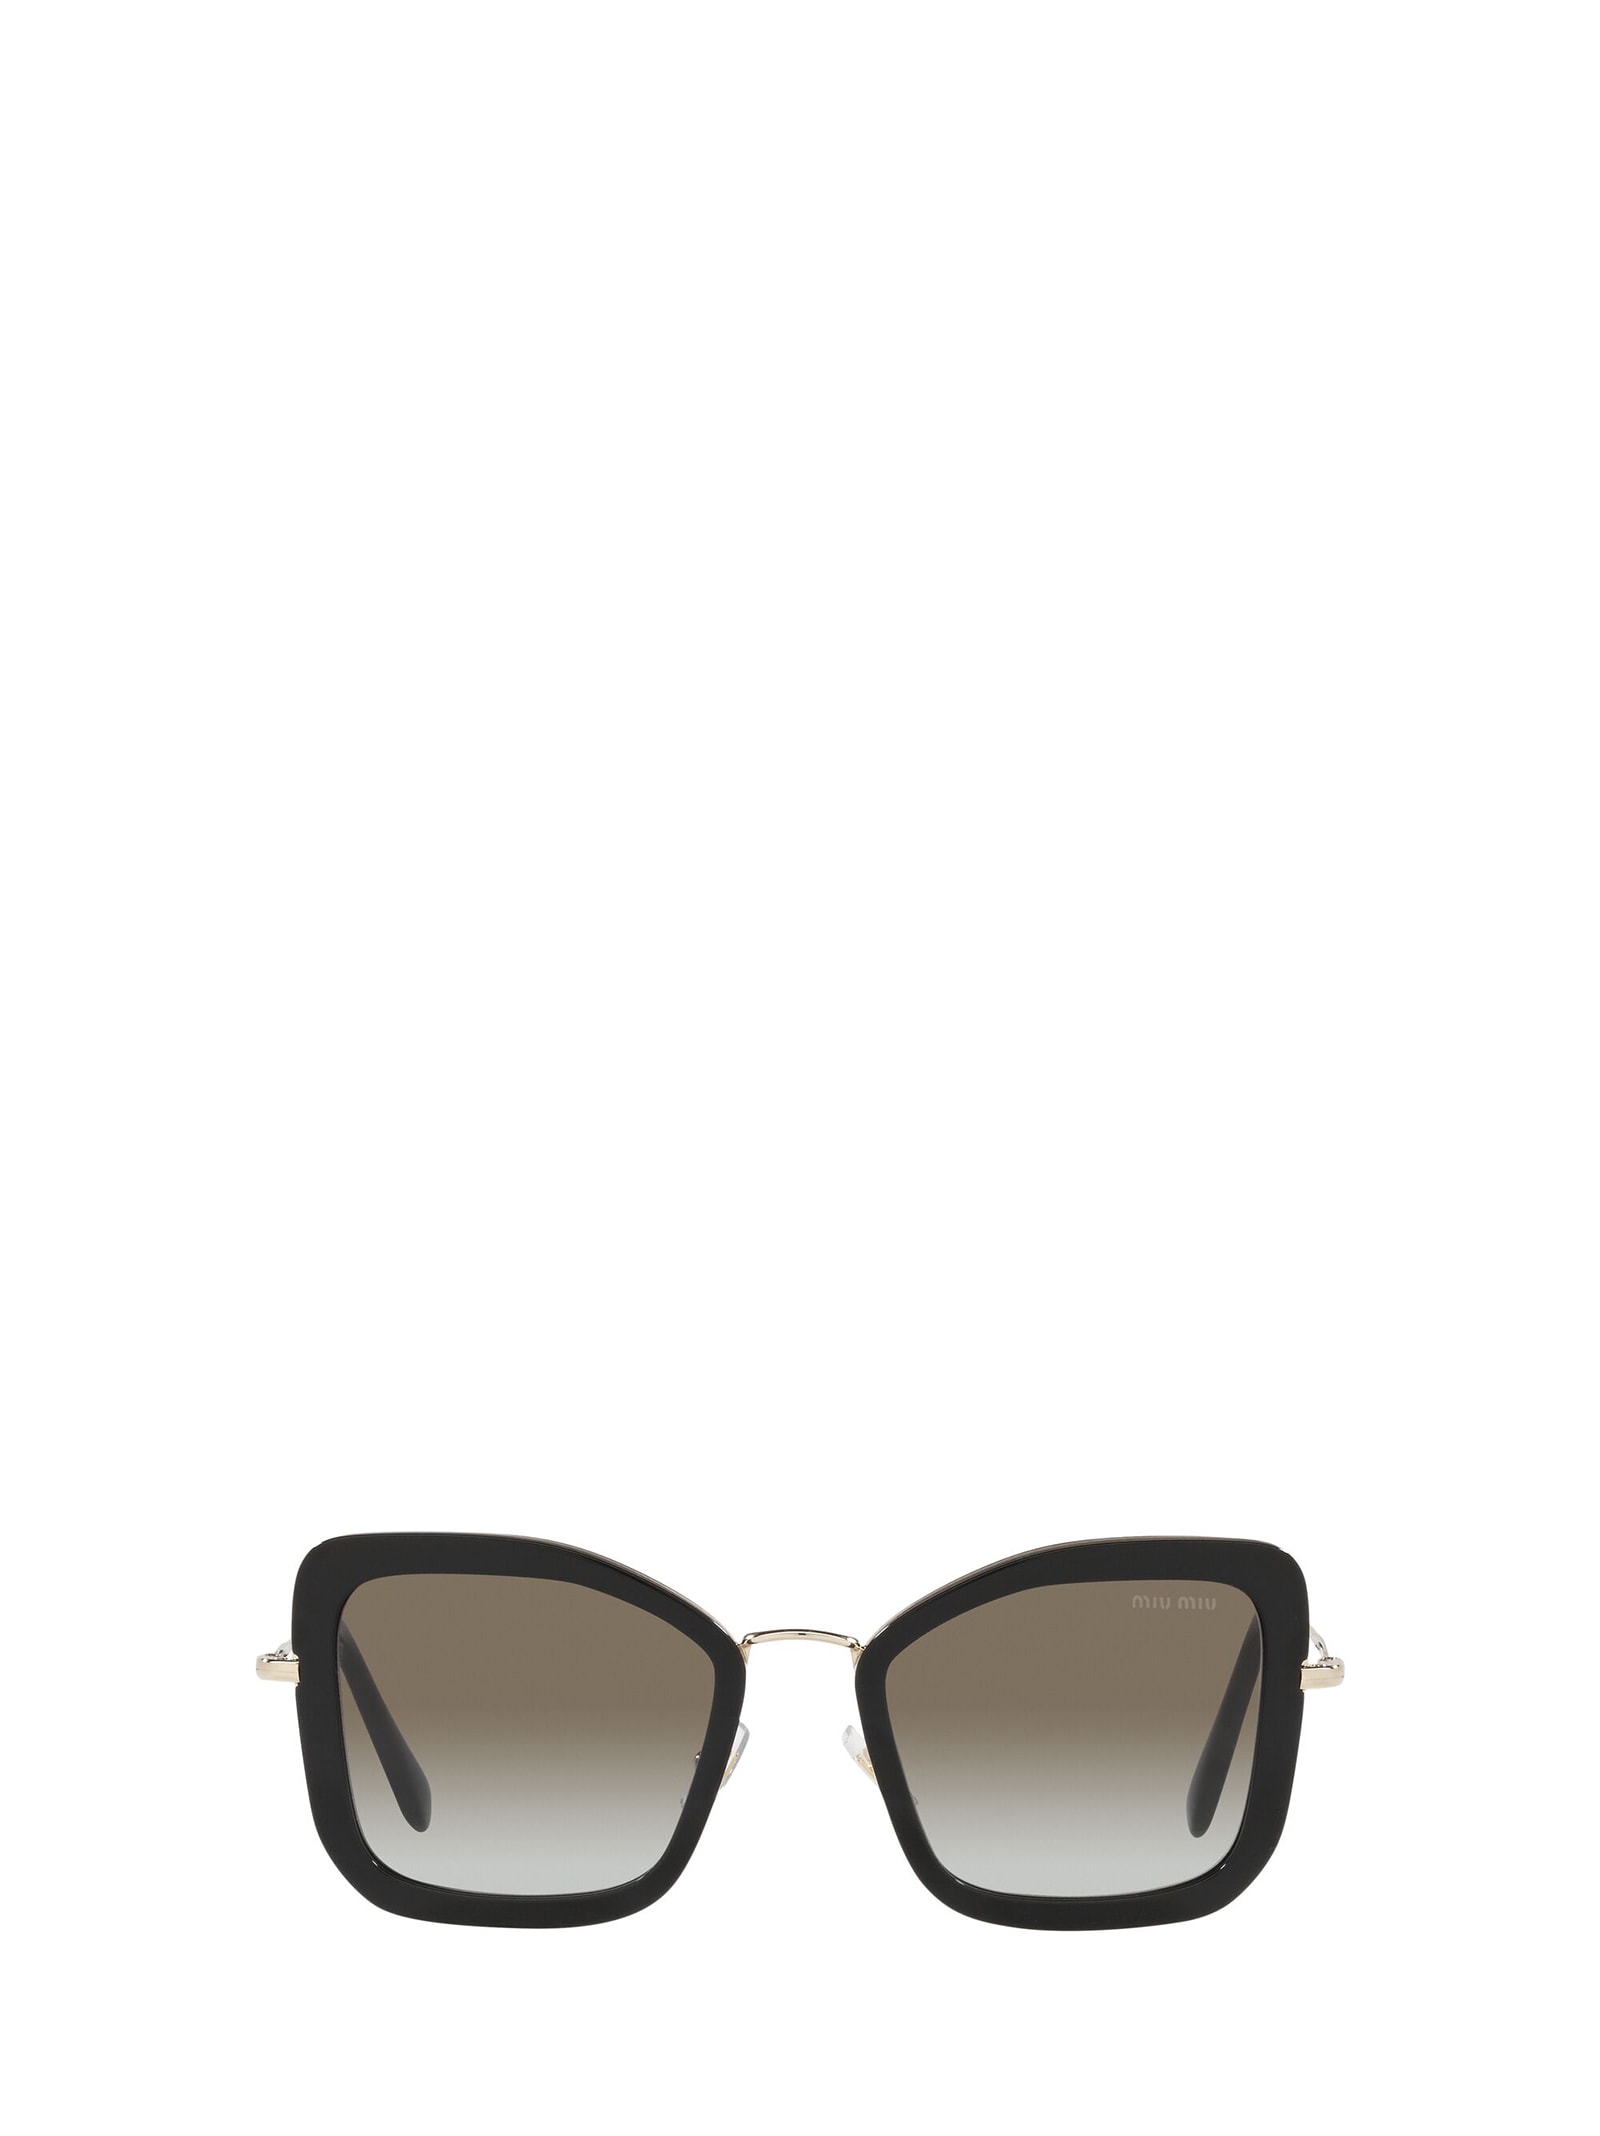 Miu Miu Eyewear Miu Miu Mu 55vs Black Sunglasses